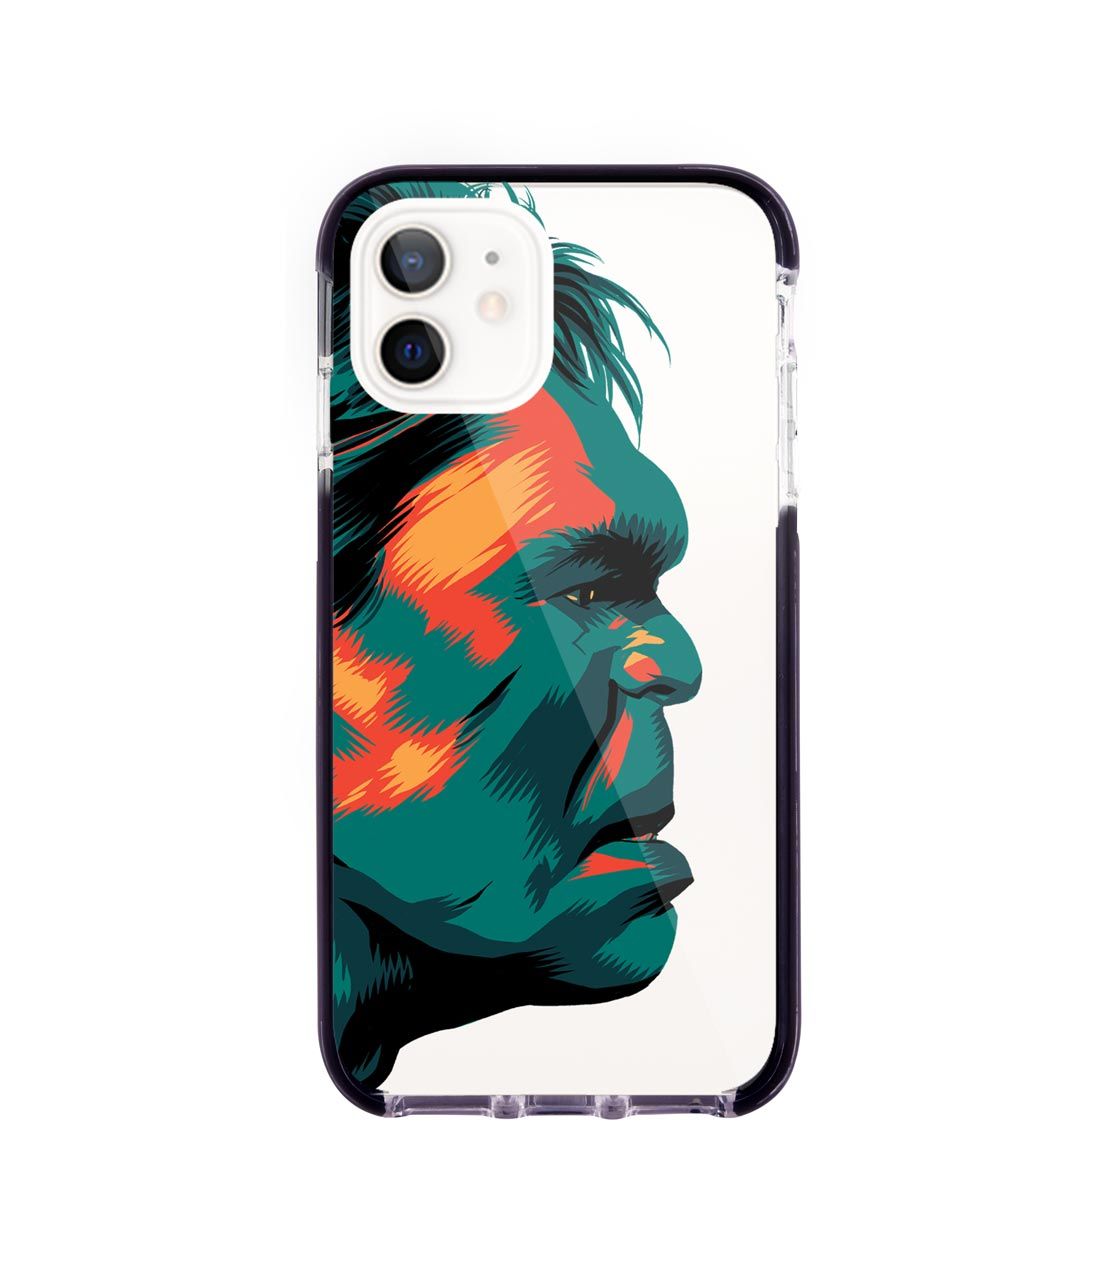 Illuminated Hulk - Extreme Case for iPhone 12